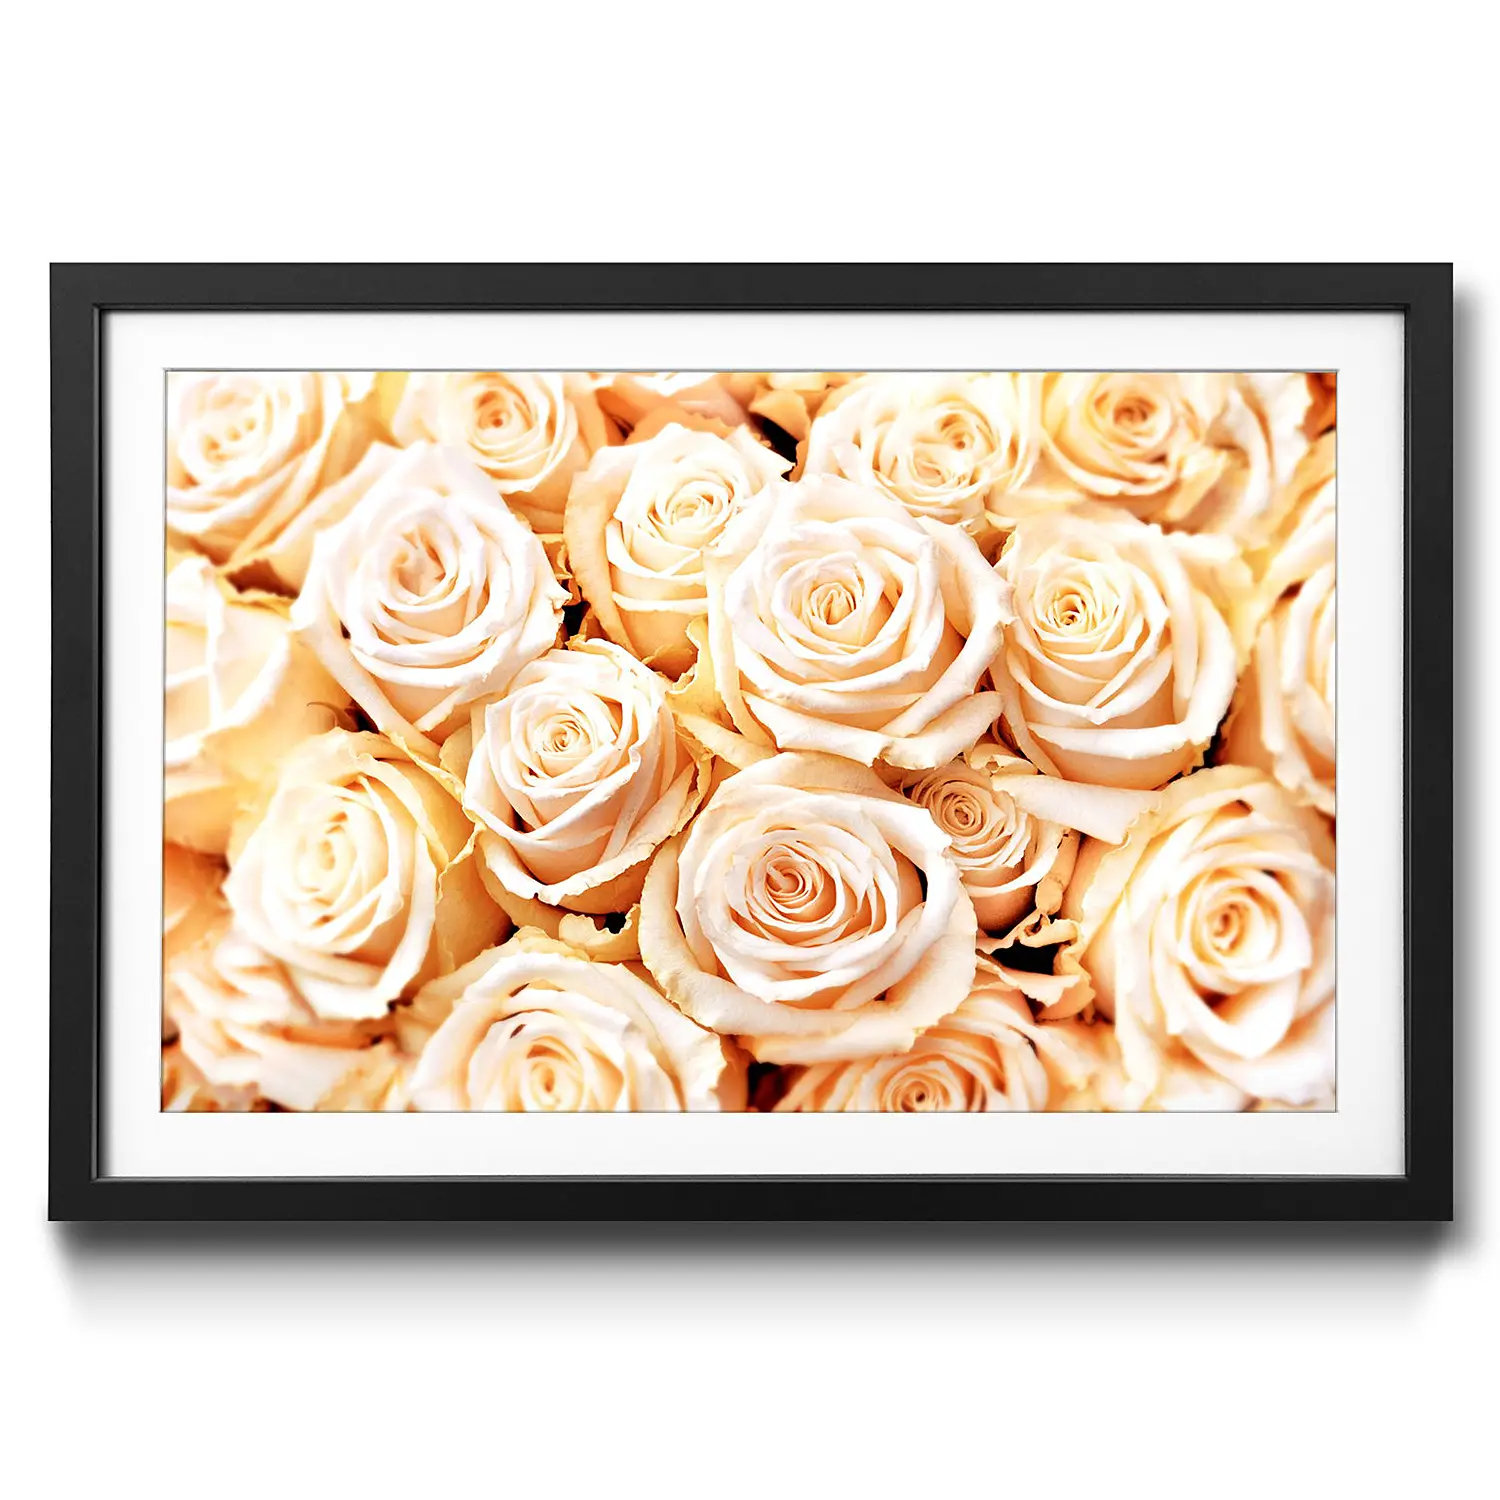 Gerahmtes Bild Creamy Roses